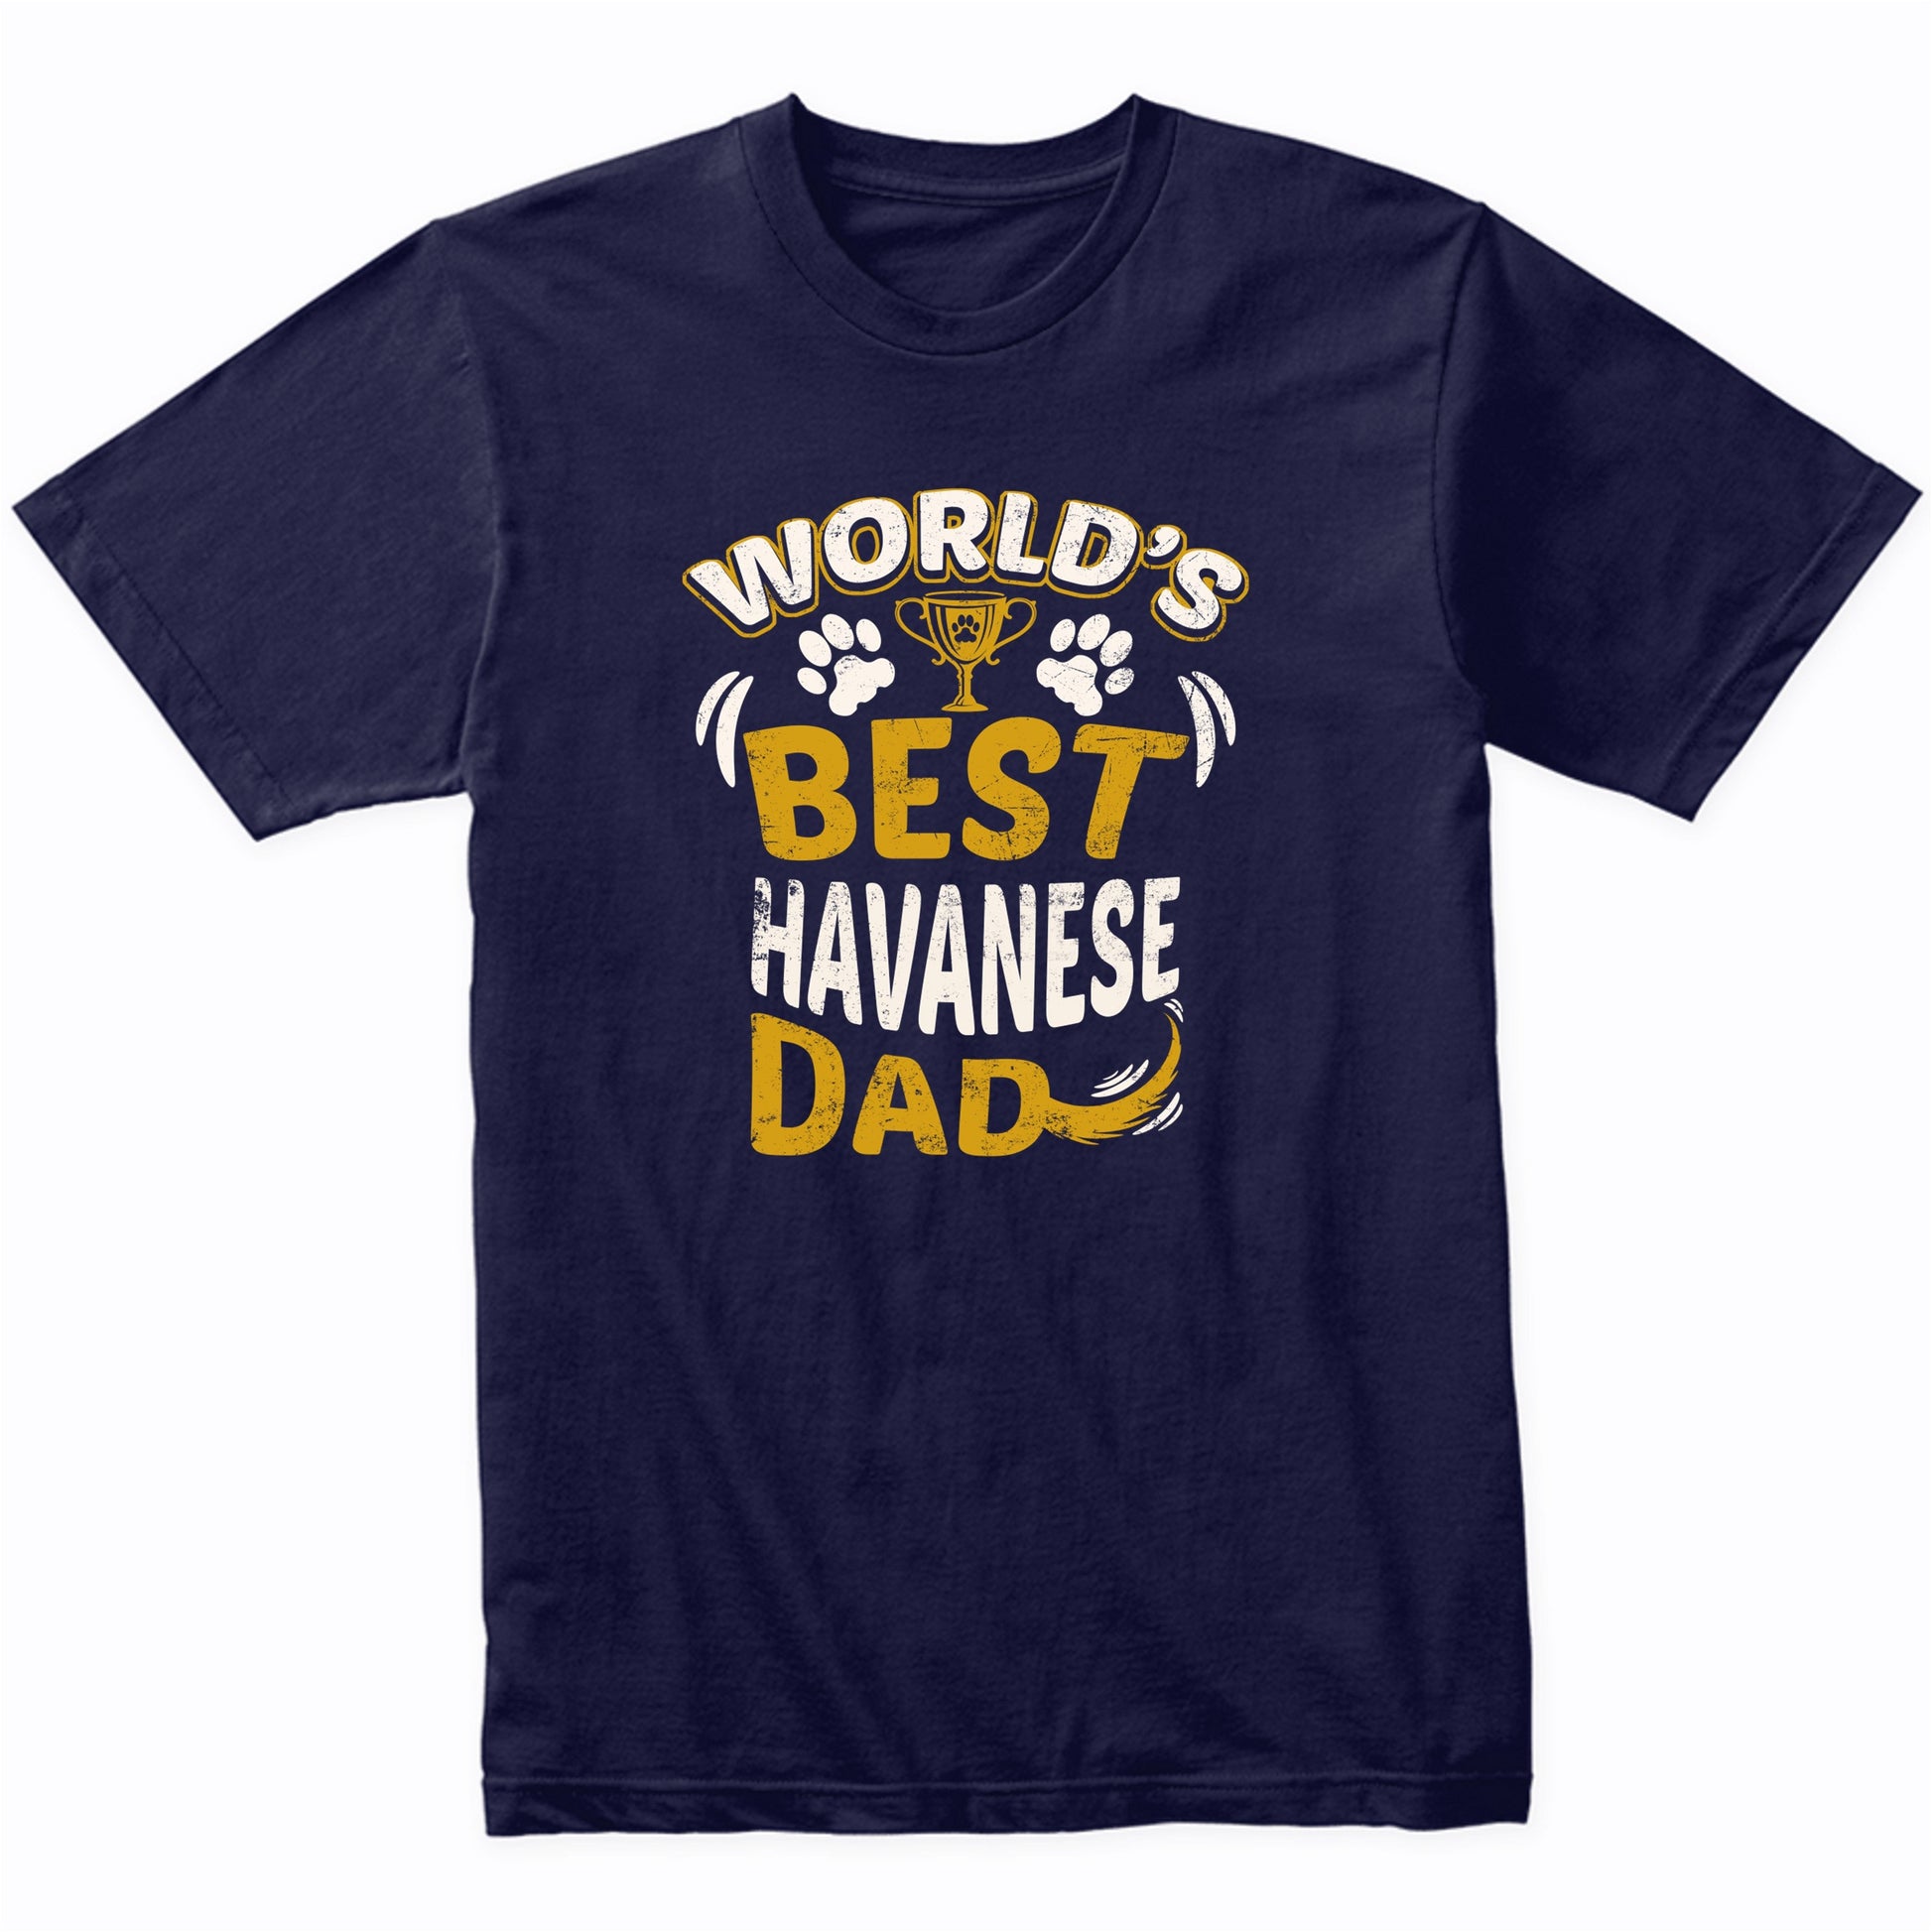 World's Best Havanese Dad Graphic T-Shirt